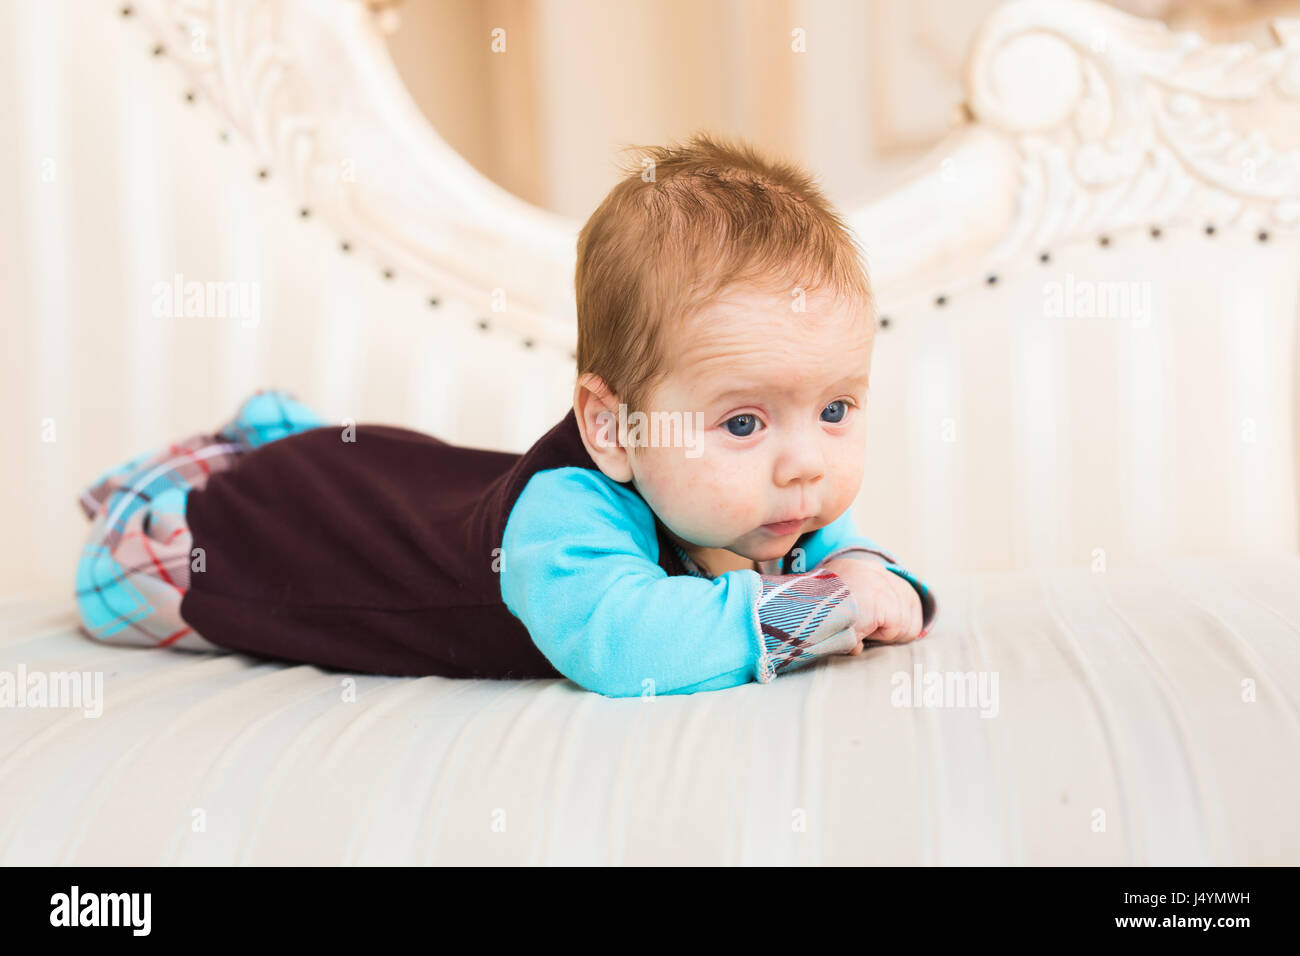 Adorable Bebe Chico Con El Pelo Rojo Y Ojos Azules Recien Nacido Lyling En El Sofa Fotografia De Stock Alamy